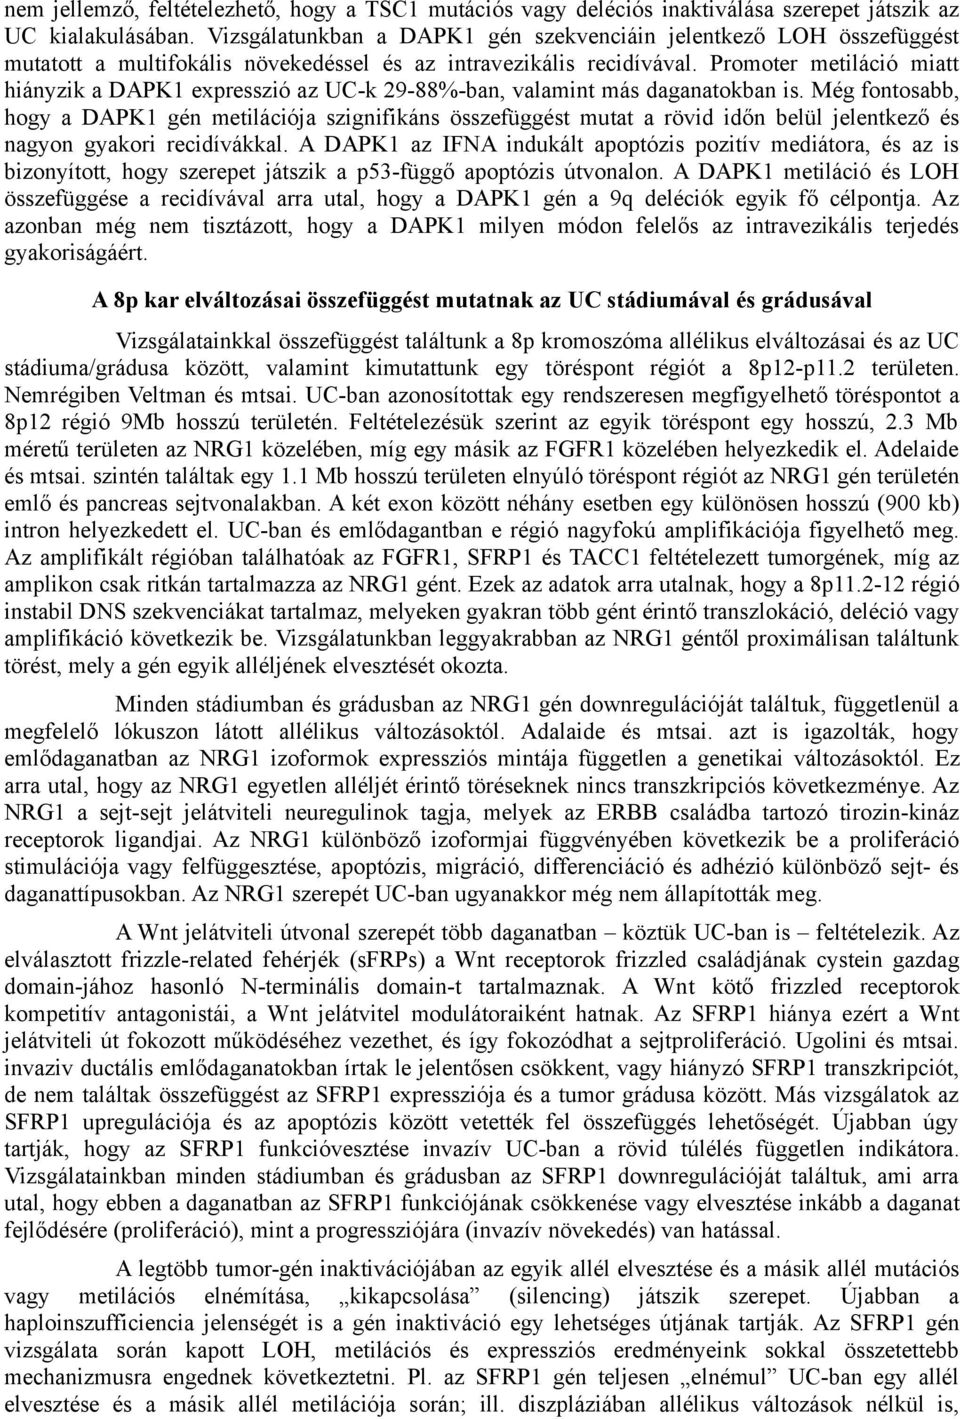 Promoter metiláció miatt hiányzik a DAPK1 expresszió az UC-k 29-88%-ban, valamint más daganatokban is.